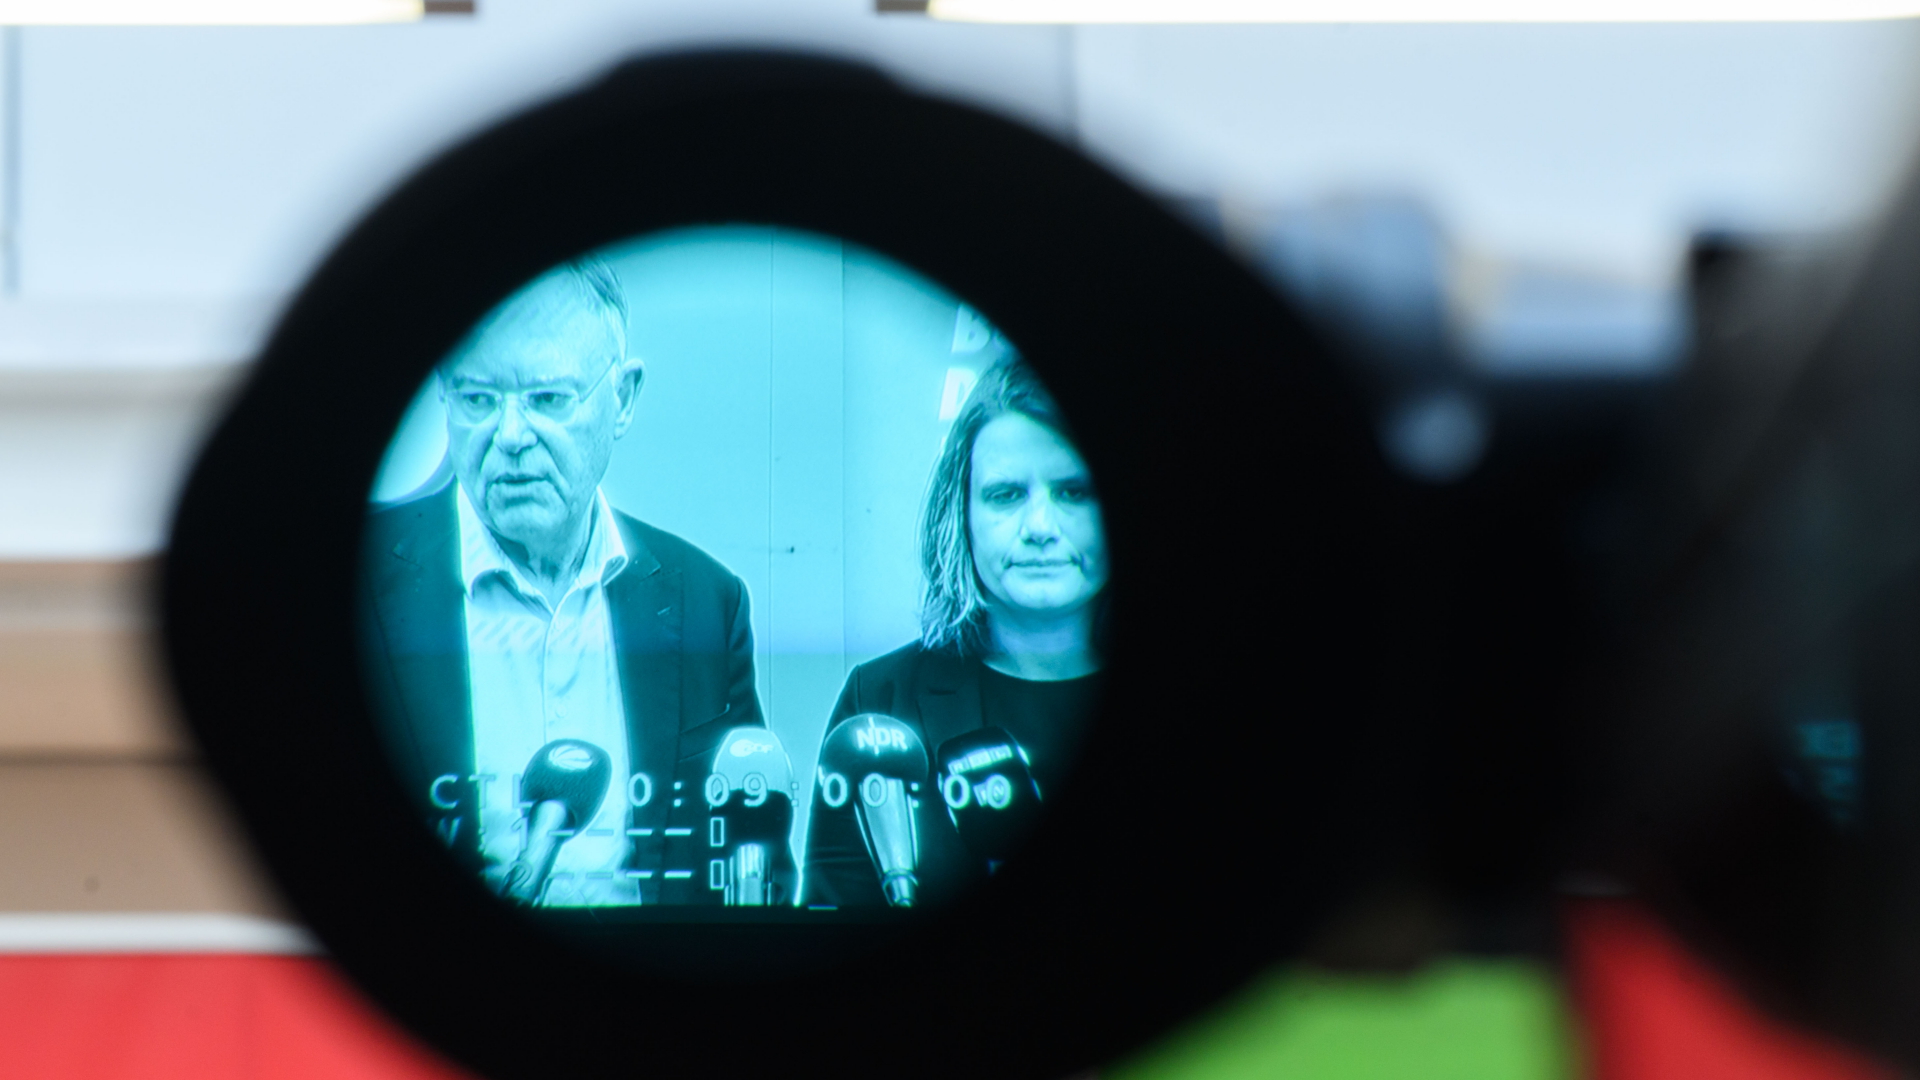 Stephan Weil (SPD), Ministerpräsident Niedersachsen, und Julia Willie Hamburg (Bündnis 90/Die Grünen) geben ein Pressestatement zu geplanten Koalitionsverhandlungen zwischen SPD und Grünen in Niedersachsen und sind dabei im Sucher einer TV-Kamera zu sehen. | dpa